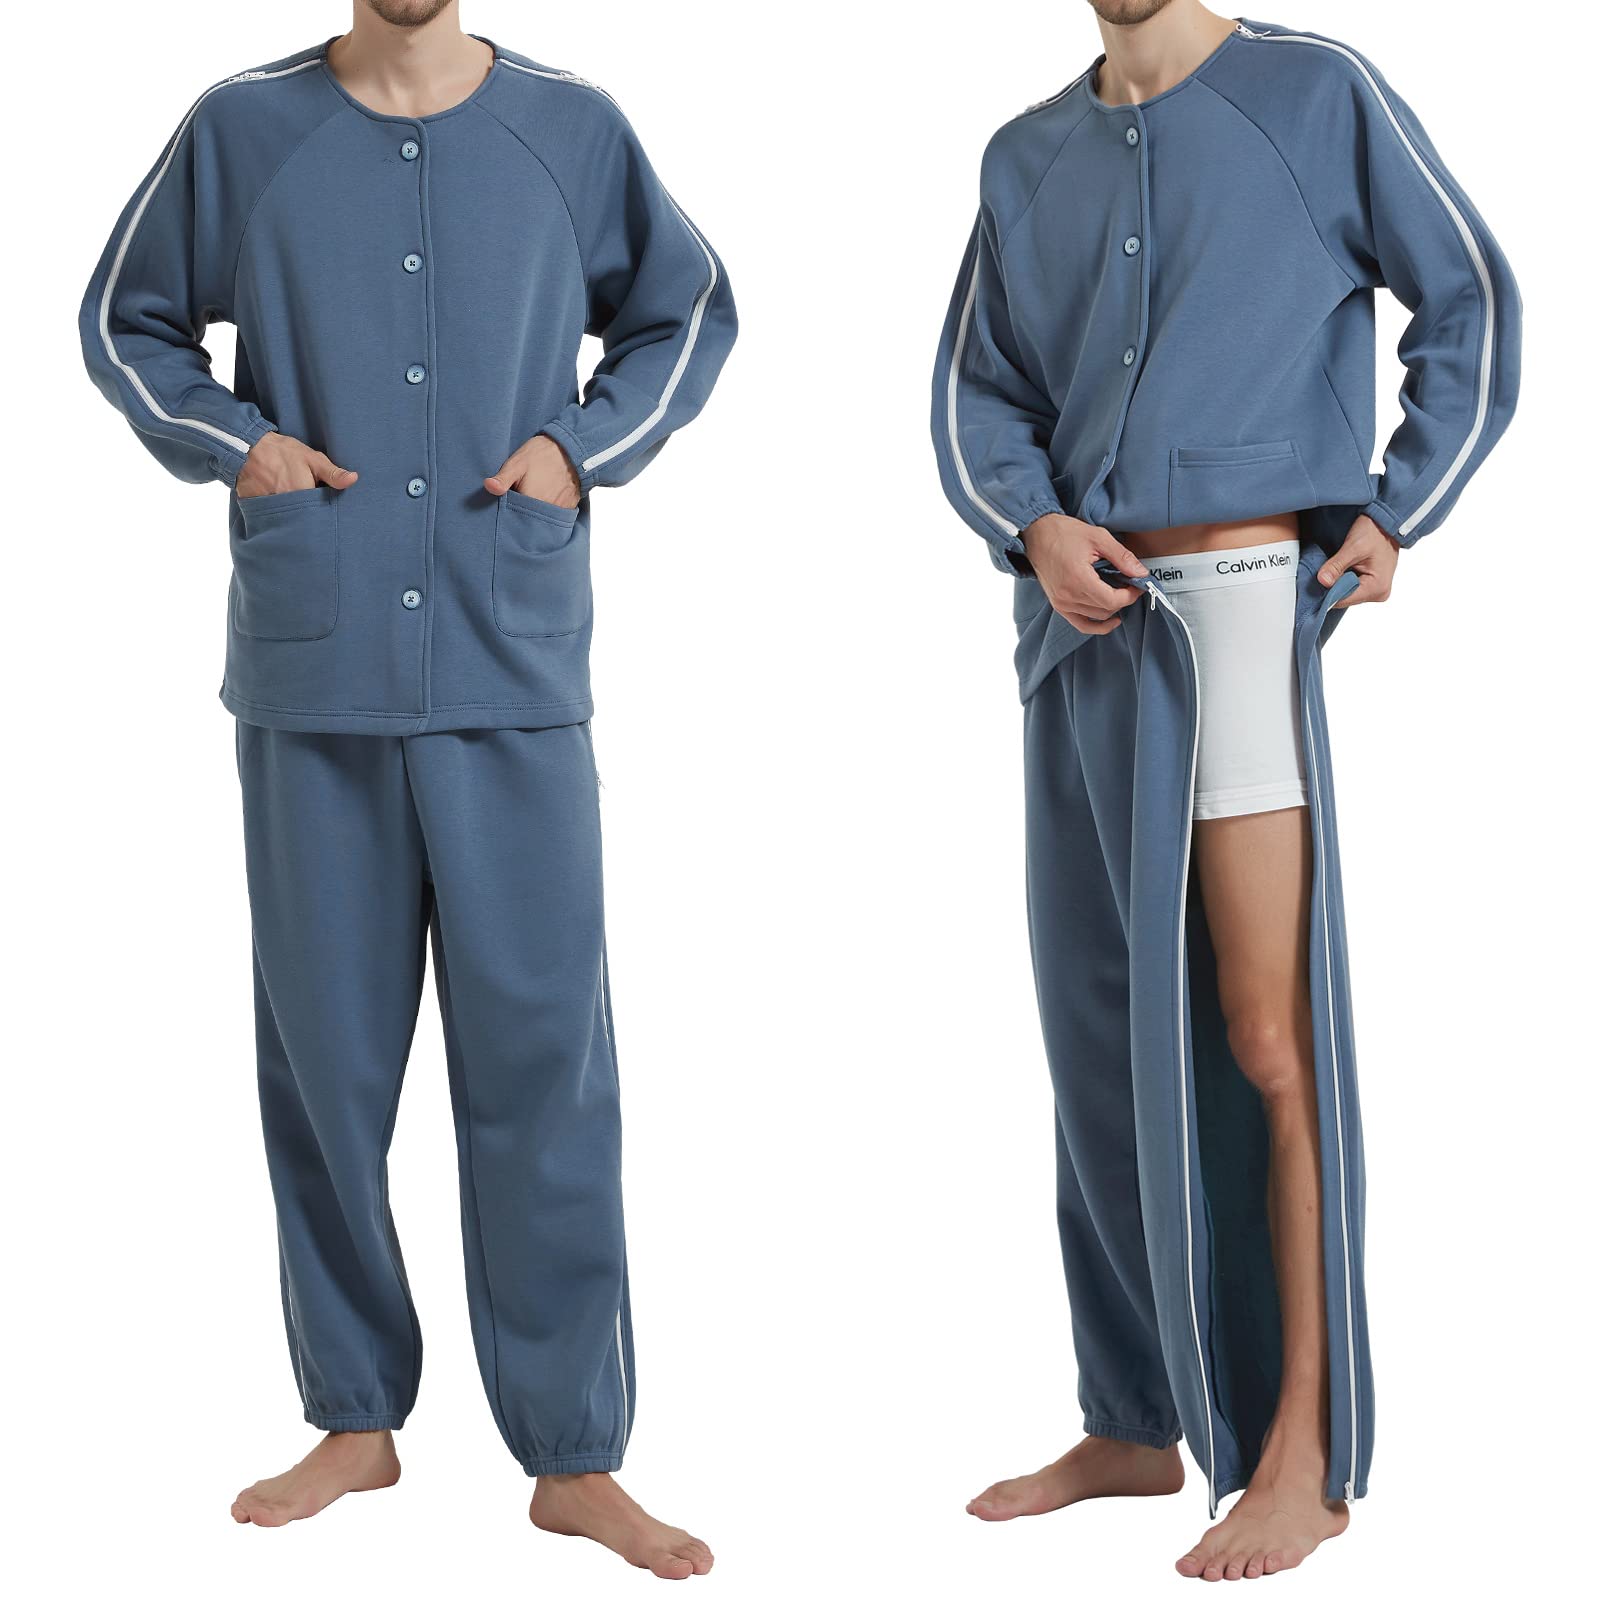 YOSINISO Bedridden Patient Clothing, Fleece Lining Double Slider Zipper ...